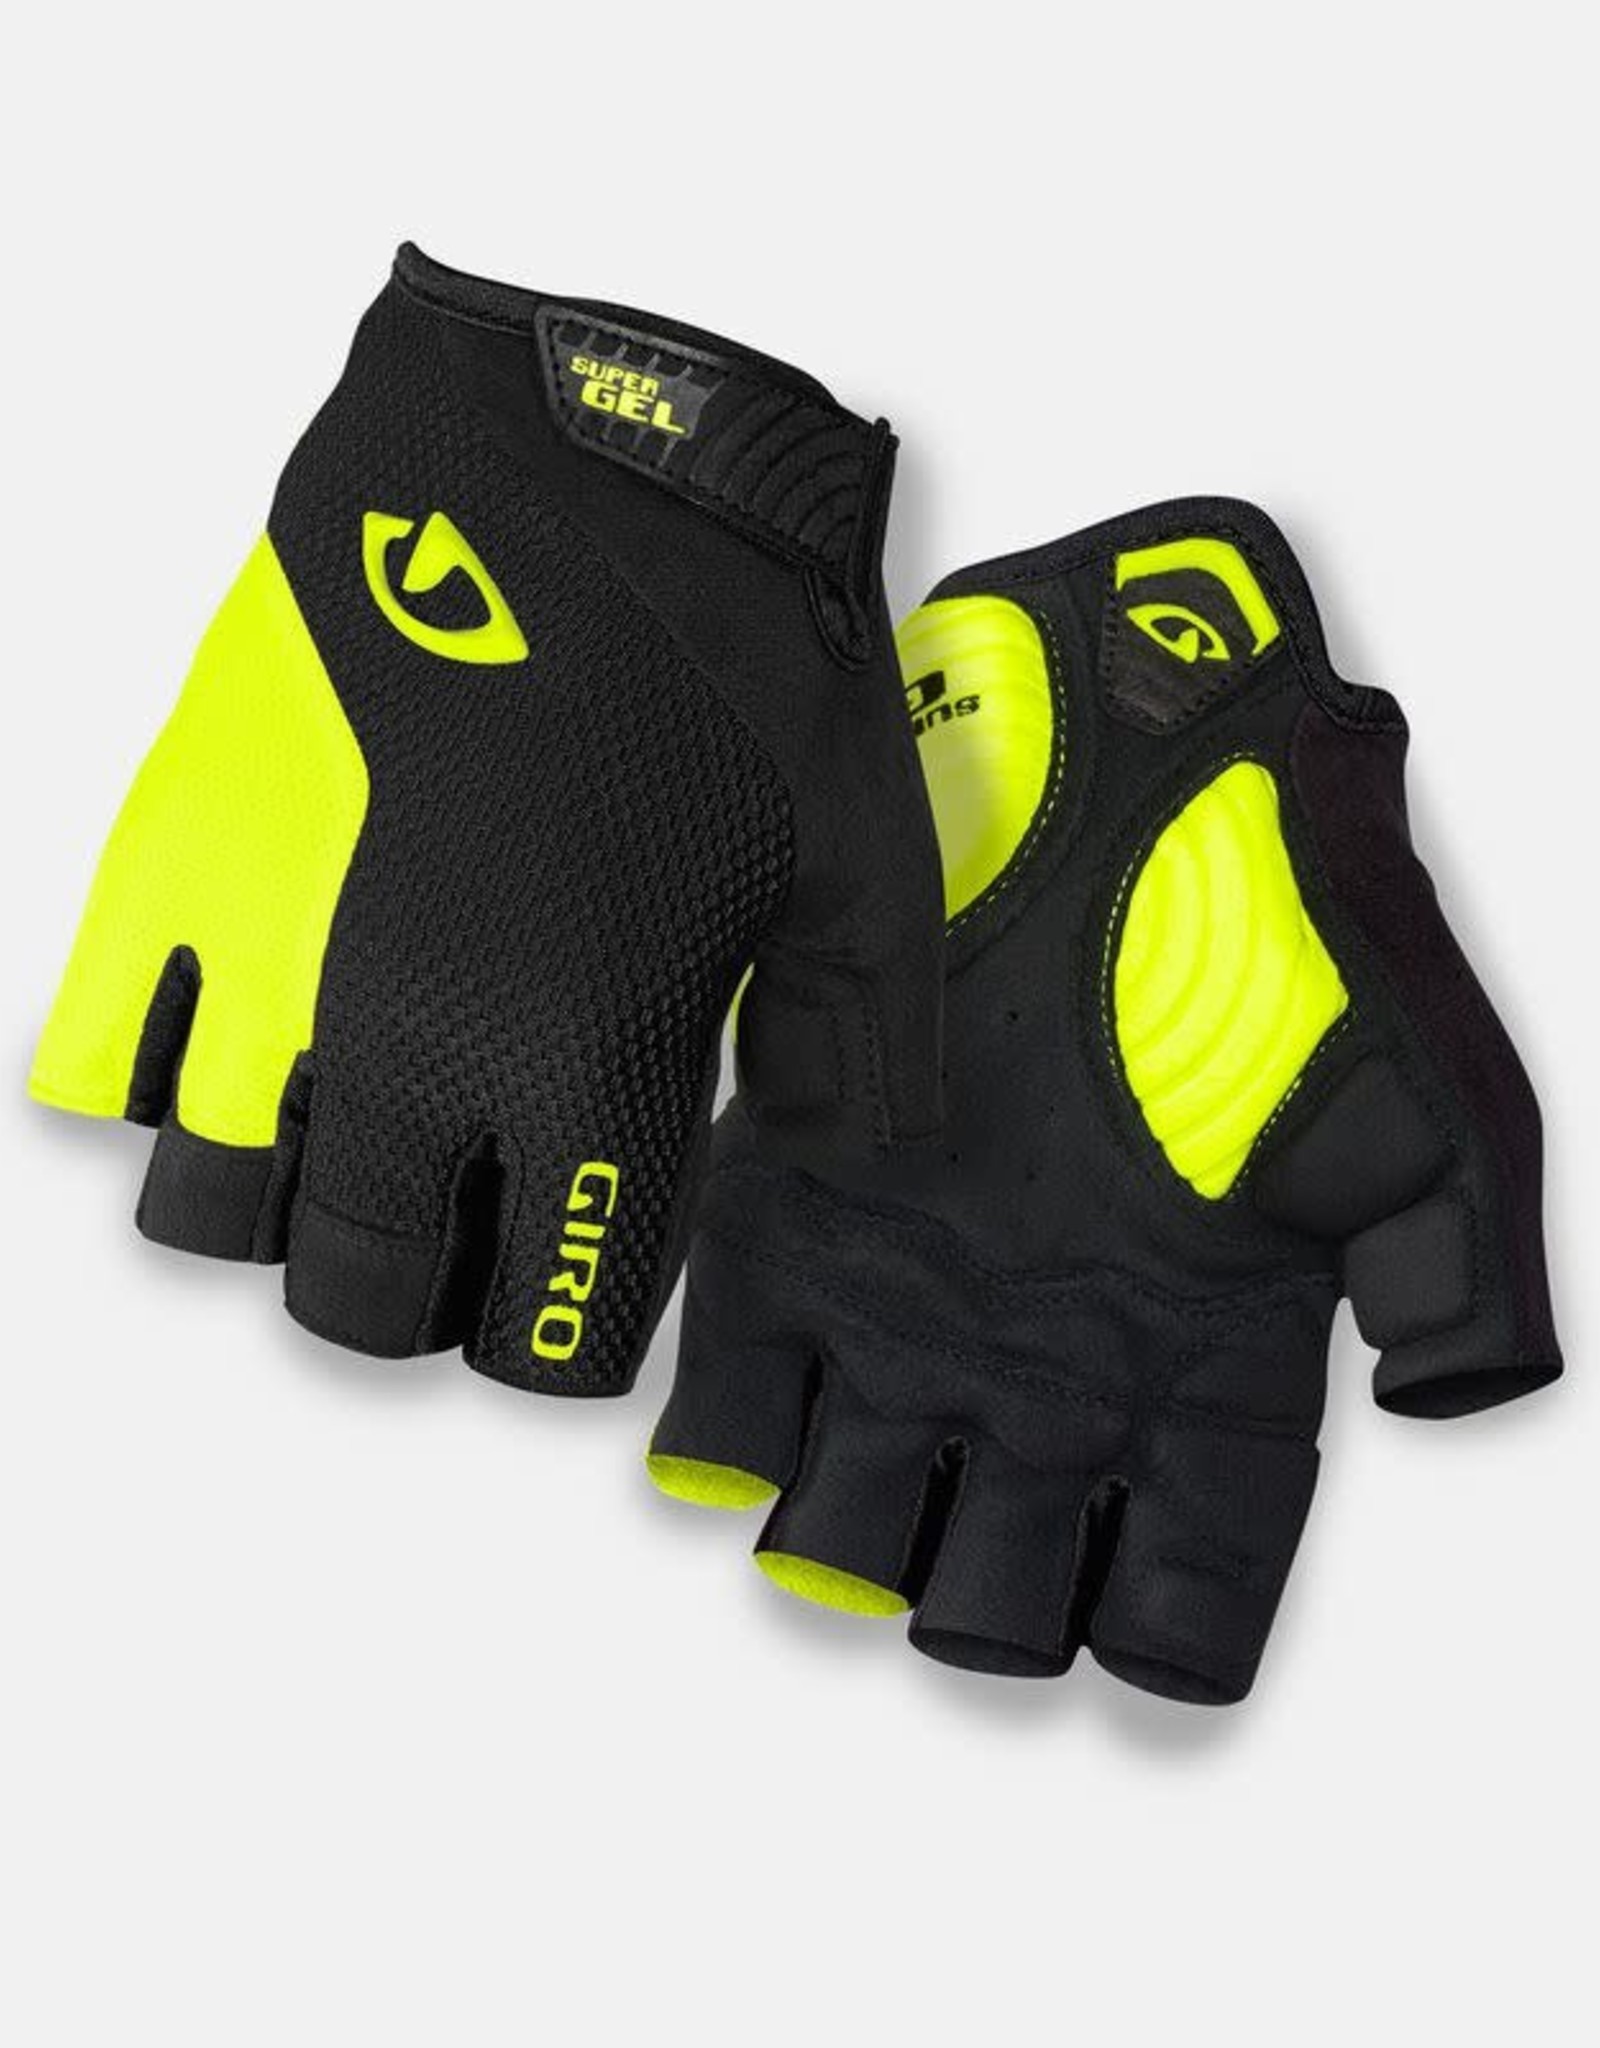 Giro Softgoods Giro Strade Dure Supergel Gloves